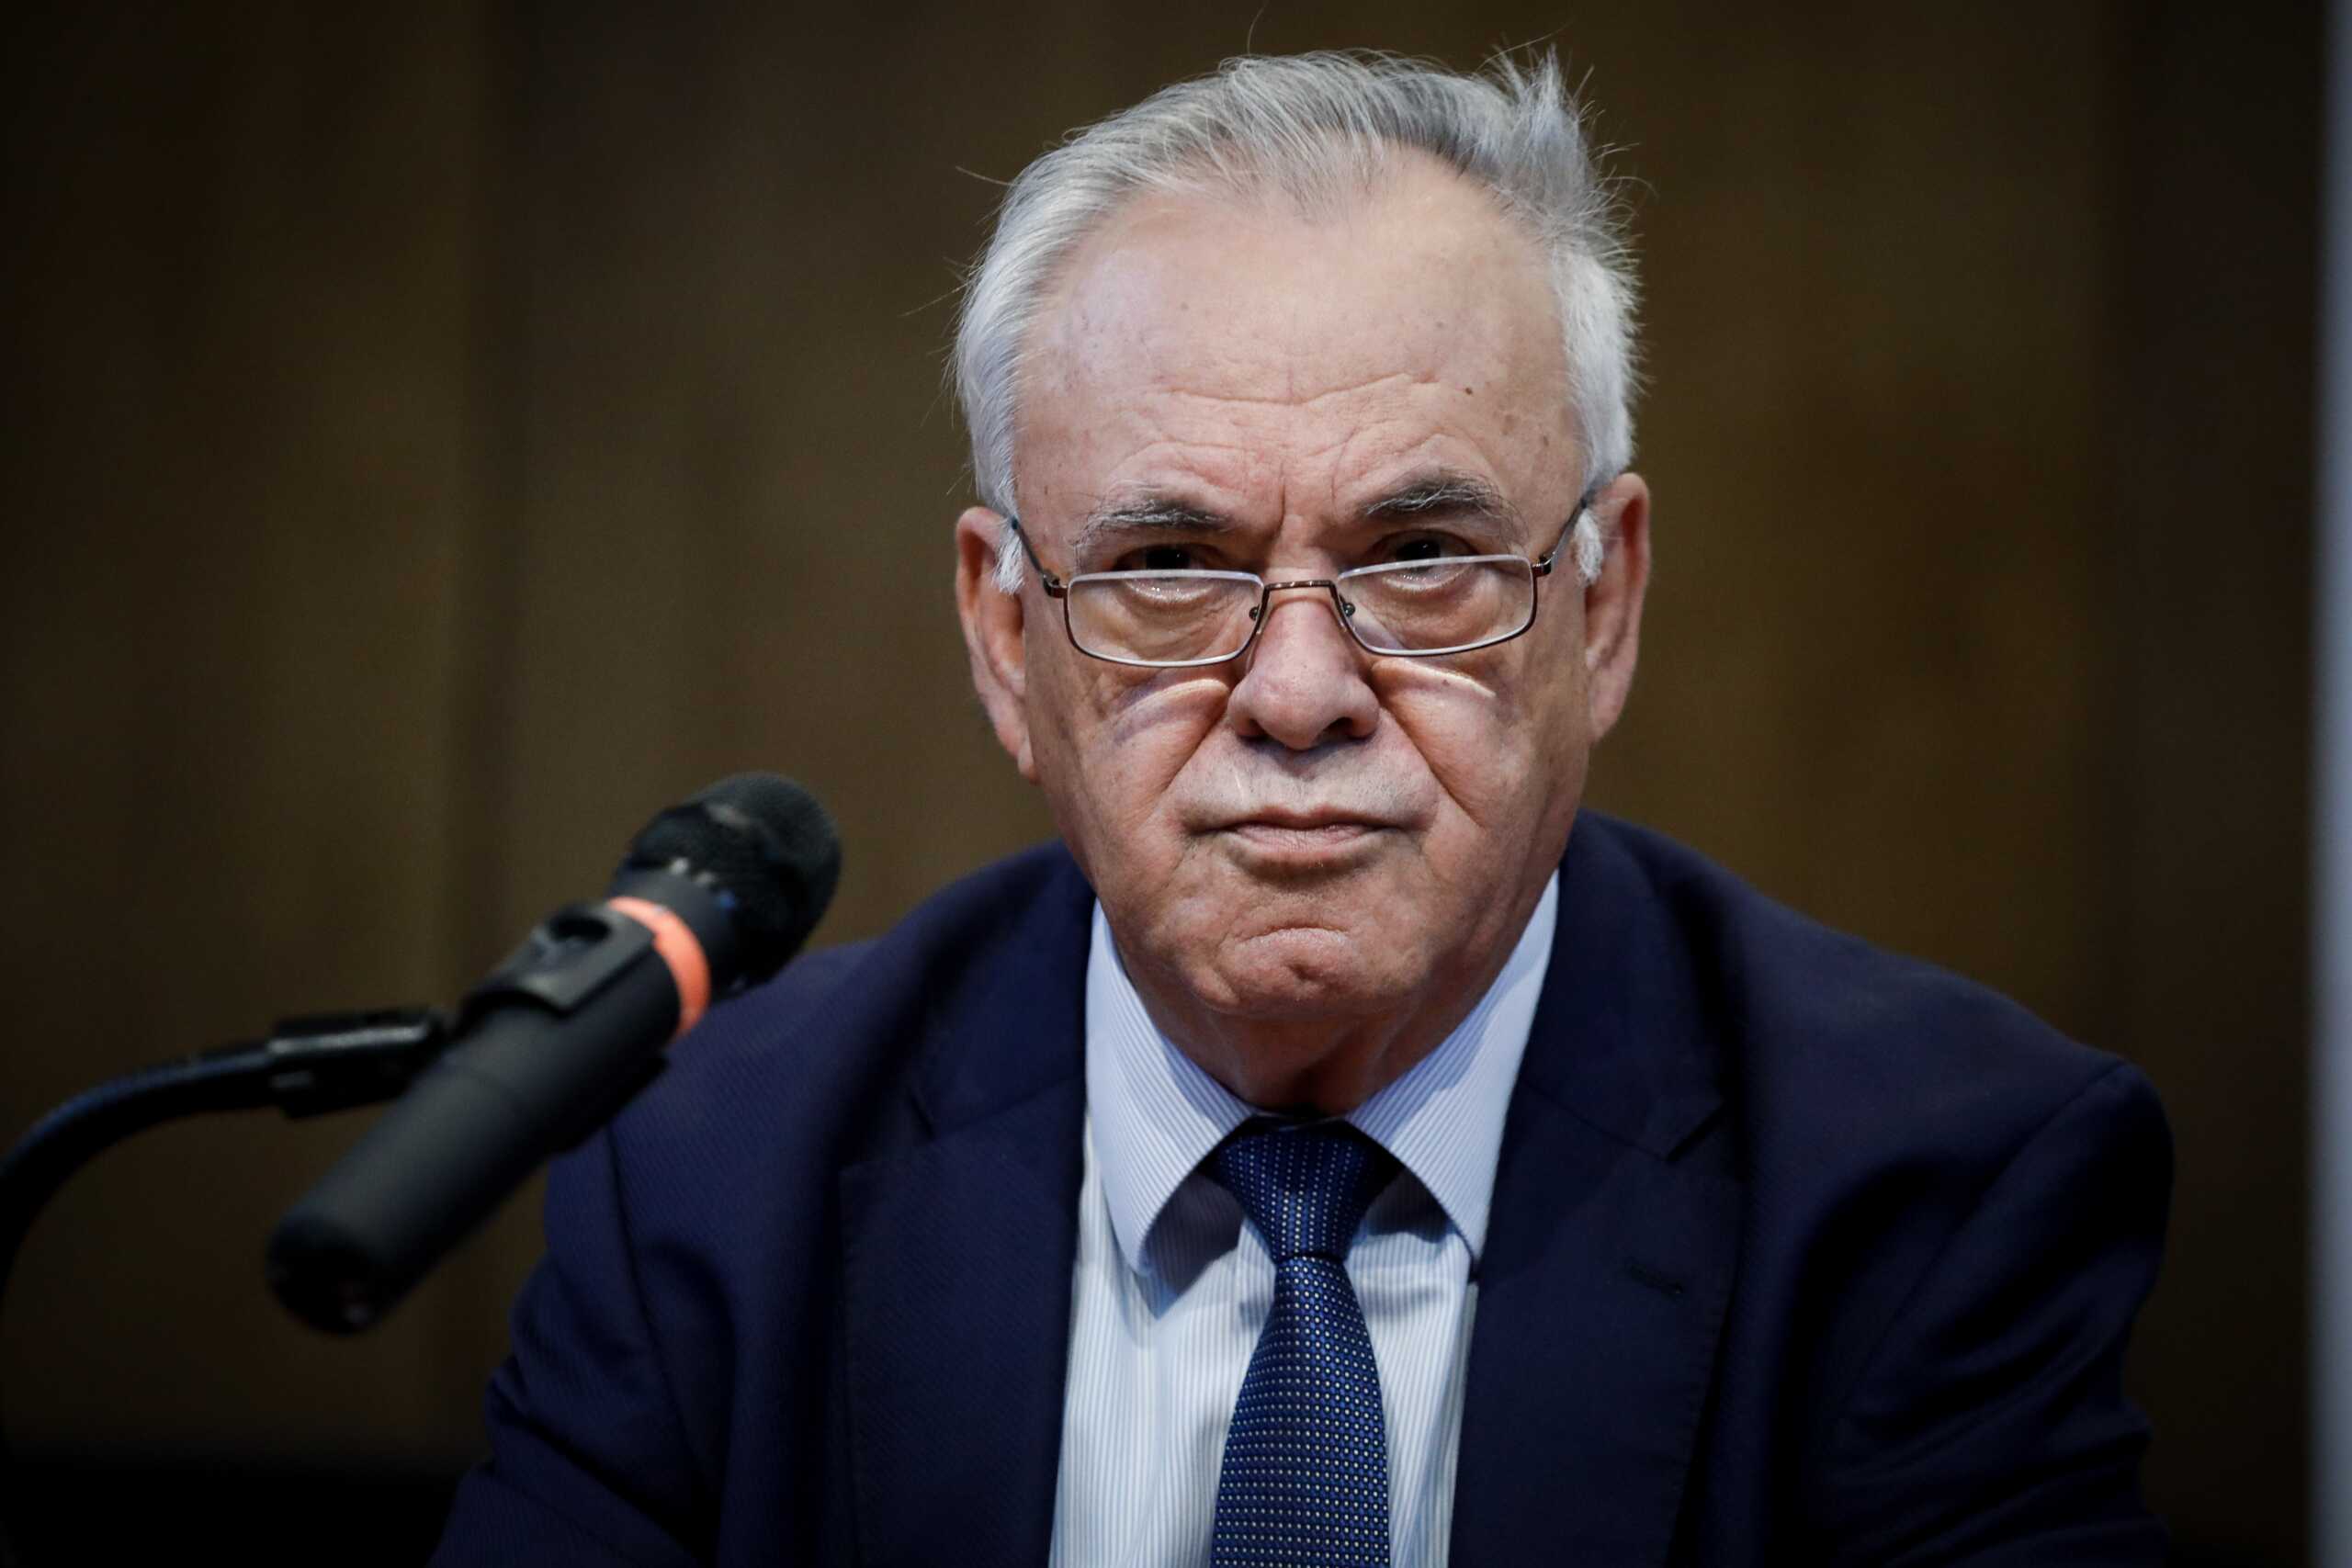 Ο Γιάννης Δραγασάκης αποχωρεί οριστικά από τον ΣΥΡΙΖΑ, με αιχμές κατά Κασσελάκη, και ζητά νέο κόμμα: «Καλή αντάμωση»